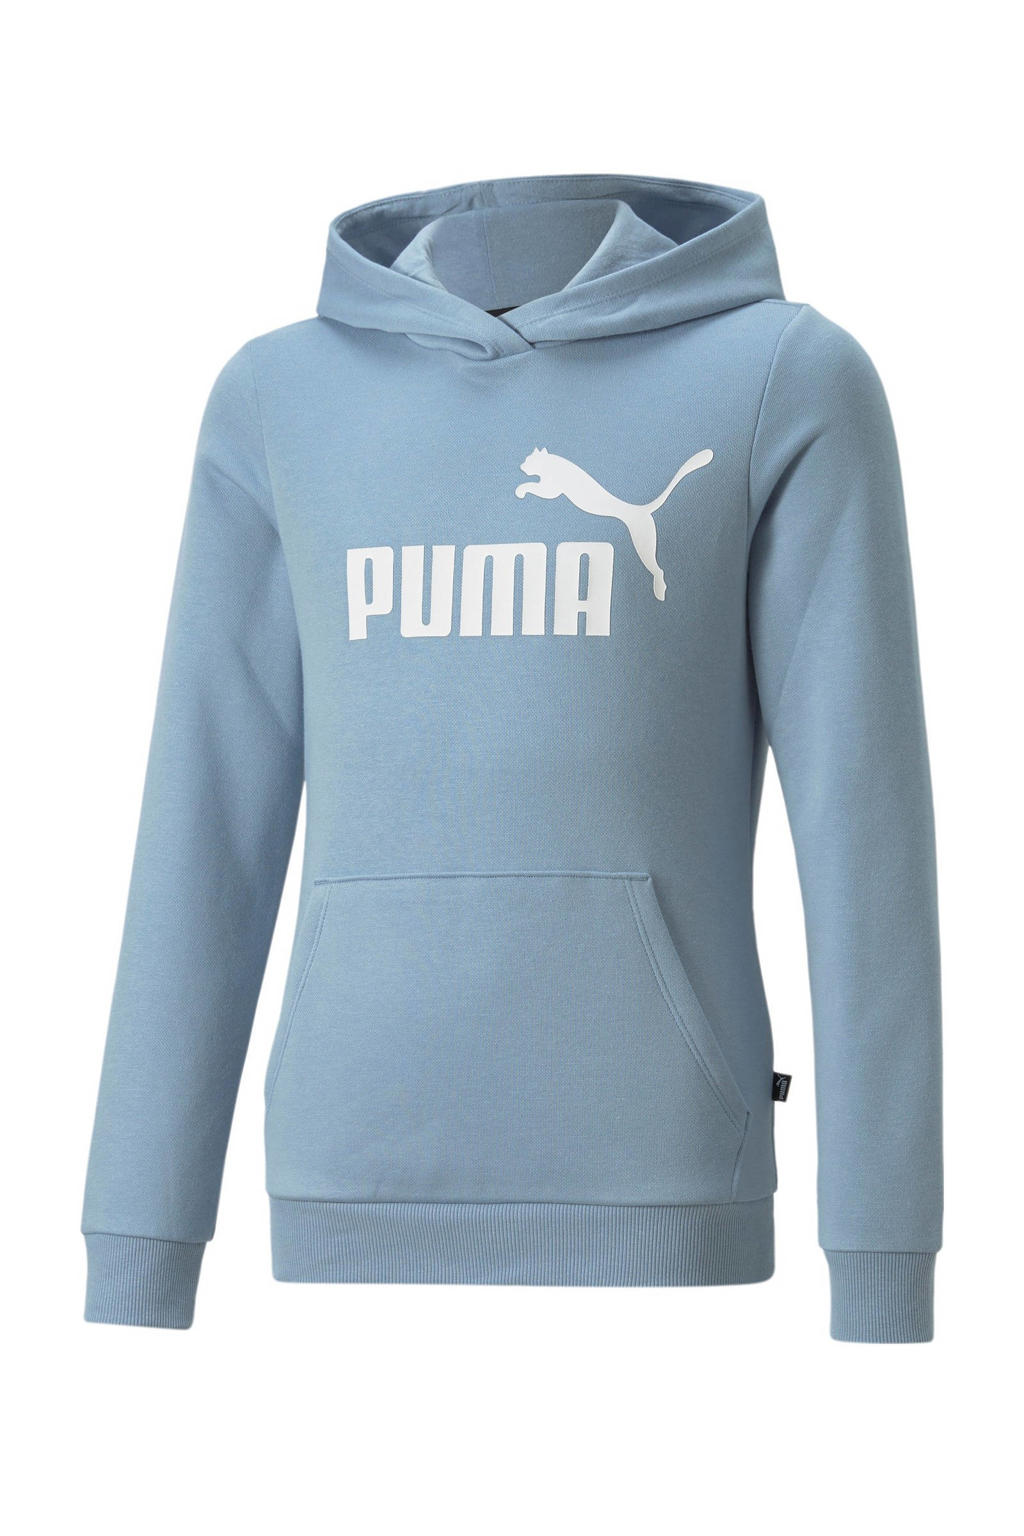 Puma hoodie lichtblauw/wit